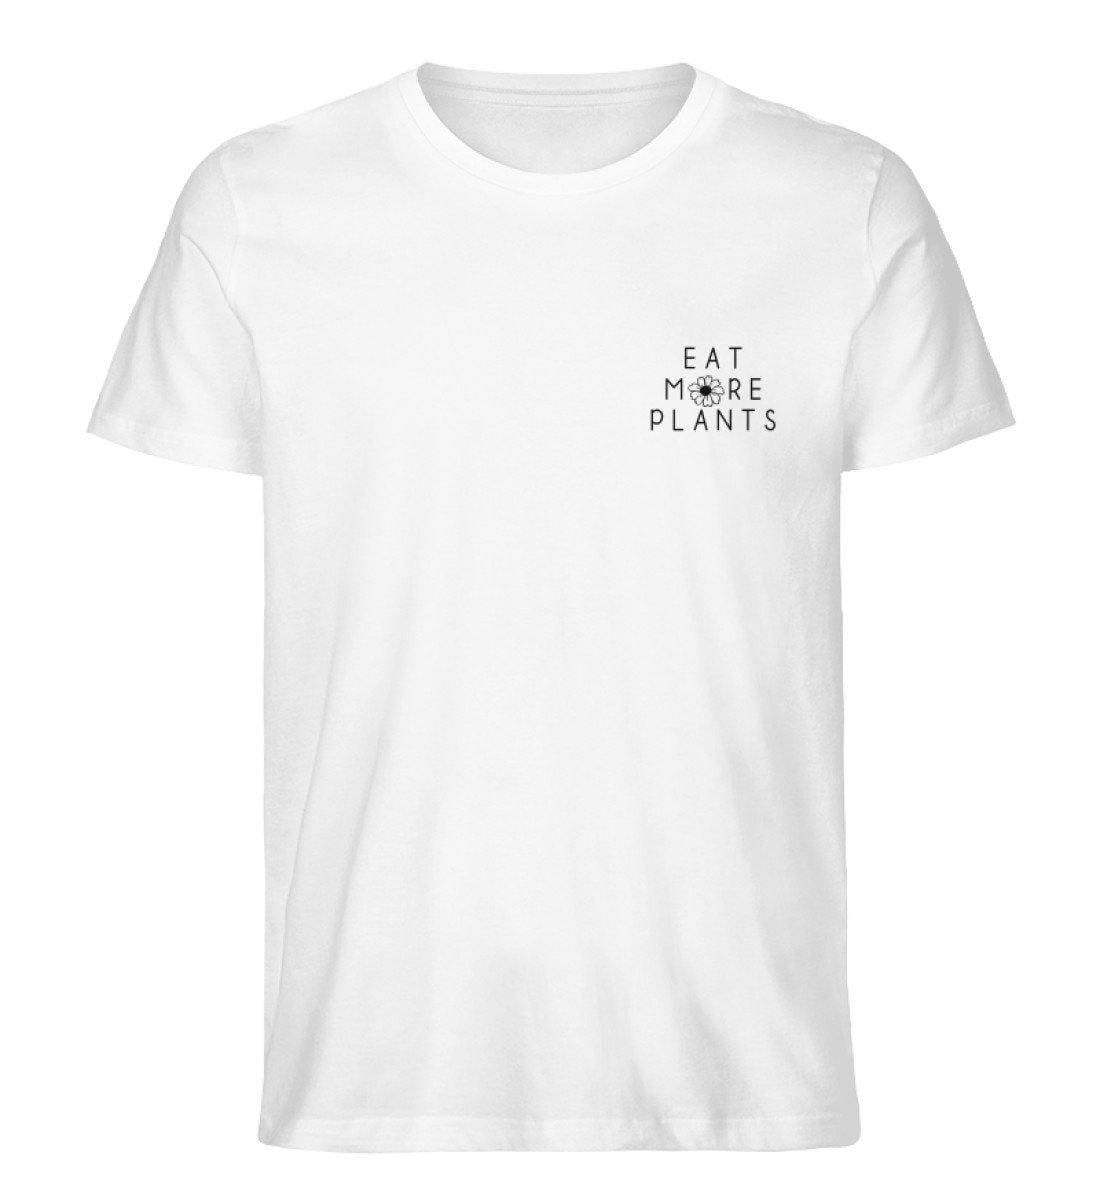 Eat more plants - Unisex Organic Shirt Rocker T-Shirt ST/ST Shirtee Weiß S 